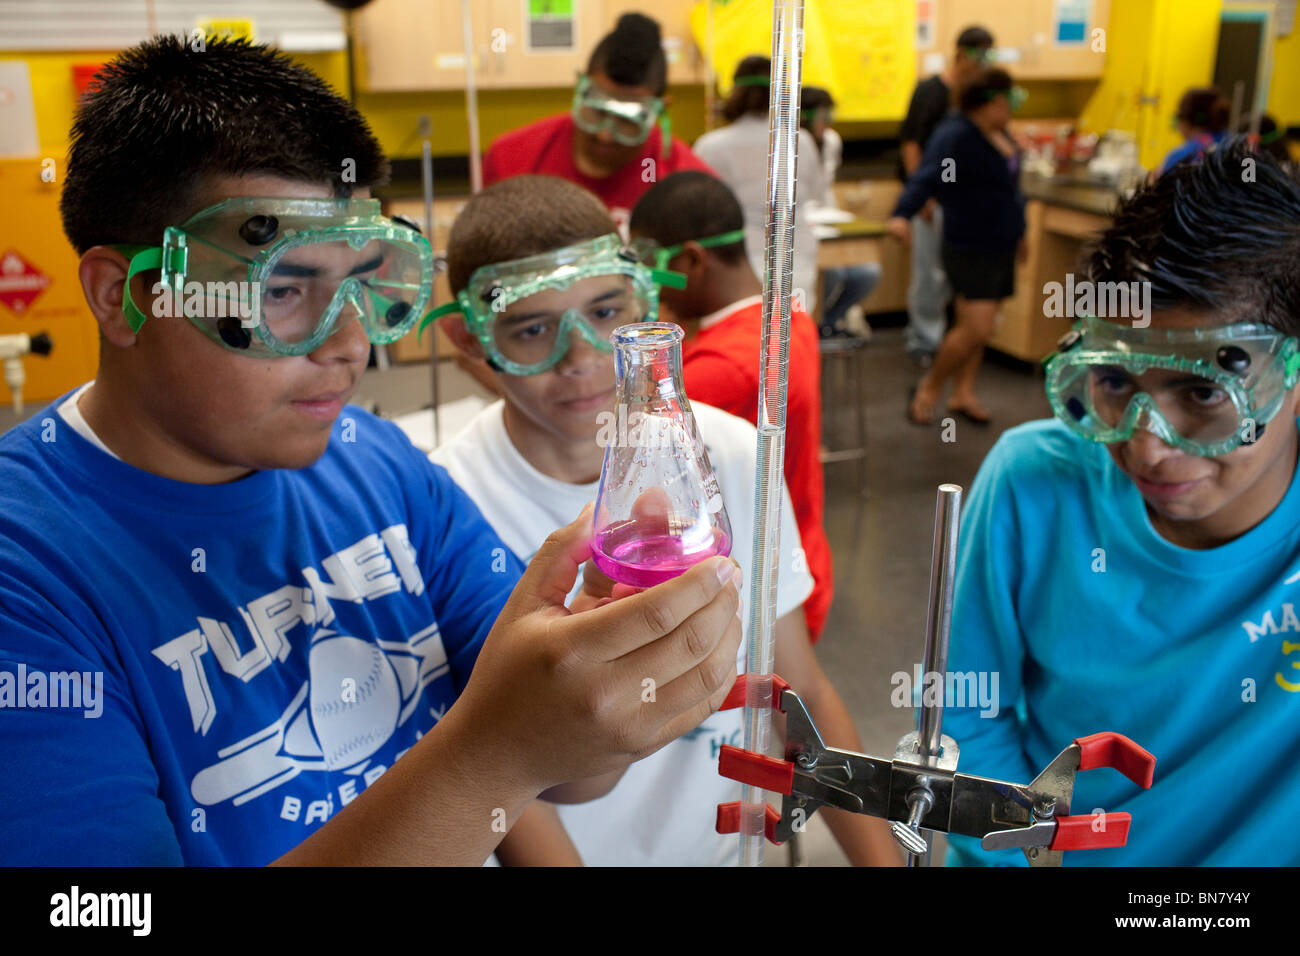 Hispanische High-School-jungen in Schutzbrille betrachten Lösung in Kolben während der Titration Experiment im Chemieunterricht Stockfoto